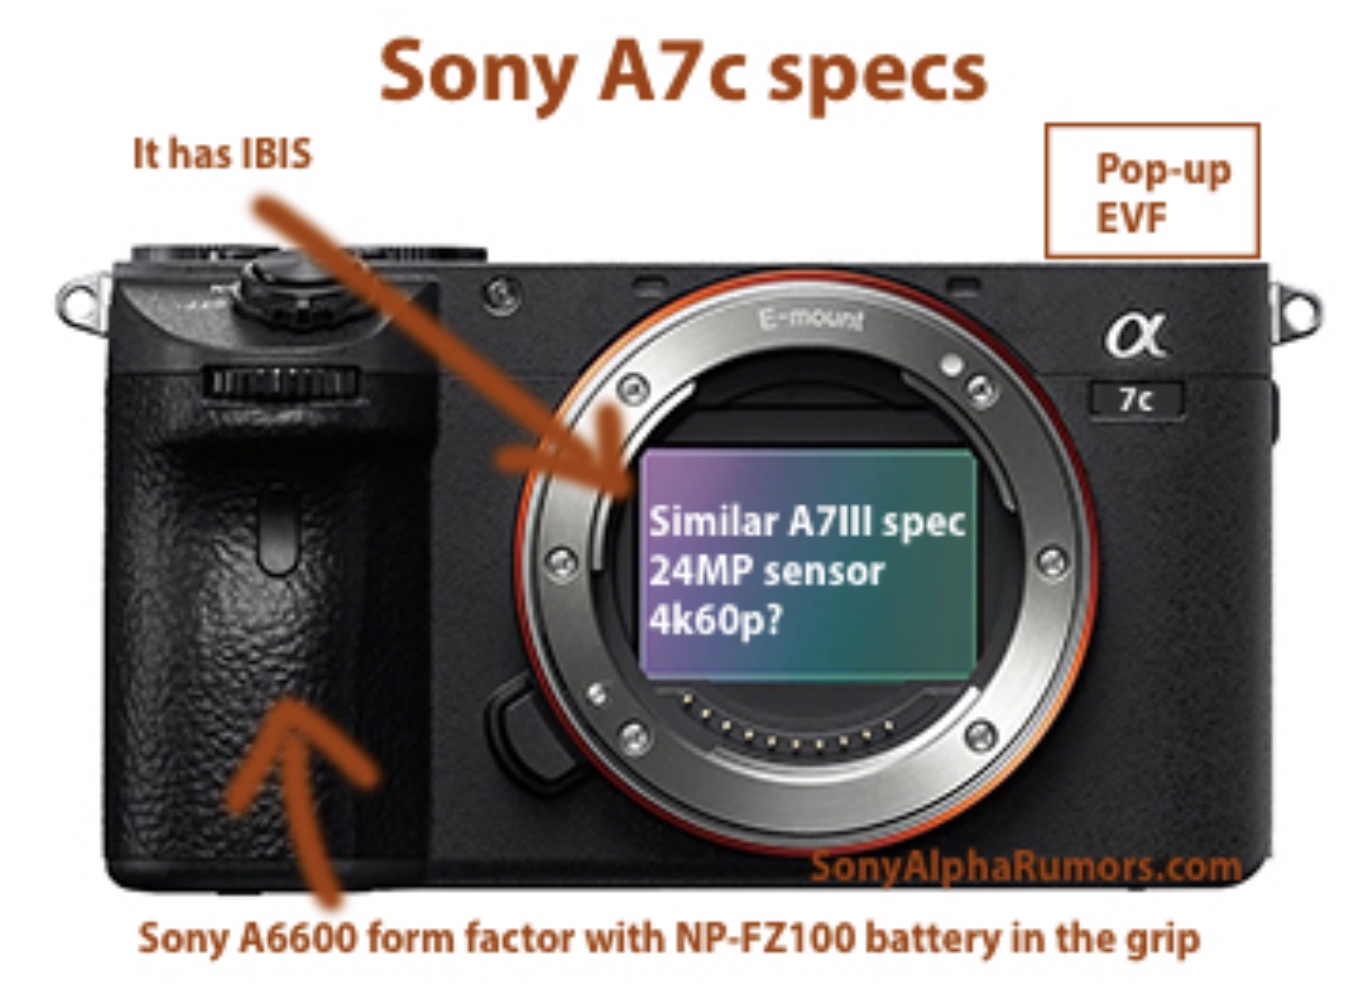 ソニーの新フルサイズミラーレスはα7C？ポップアップEVFで超コンパクトなカメラになる！？（SAR） | Dmaniax.com